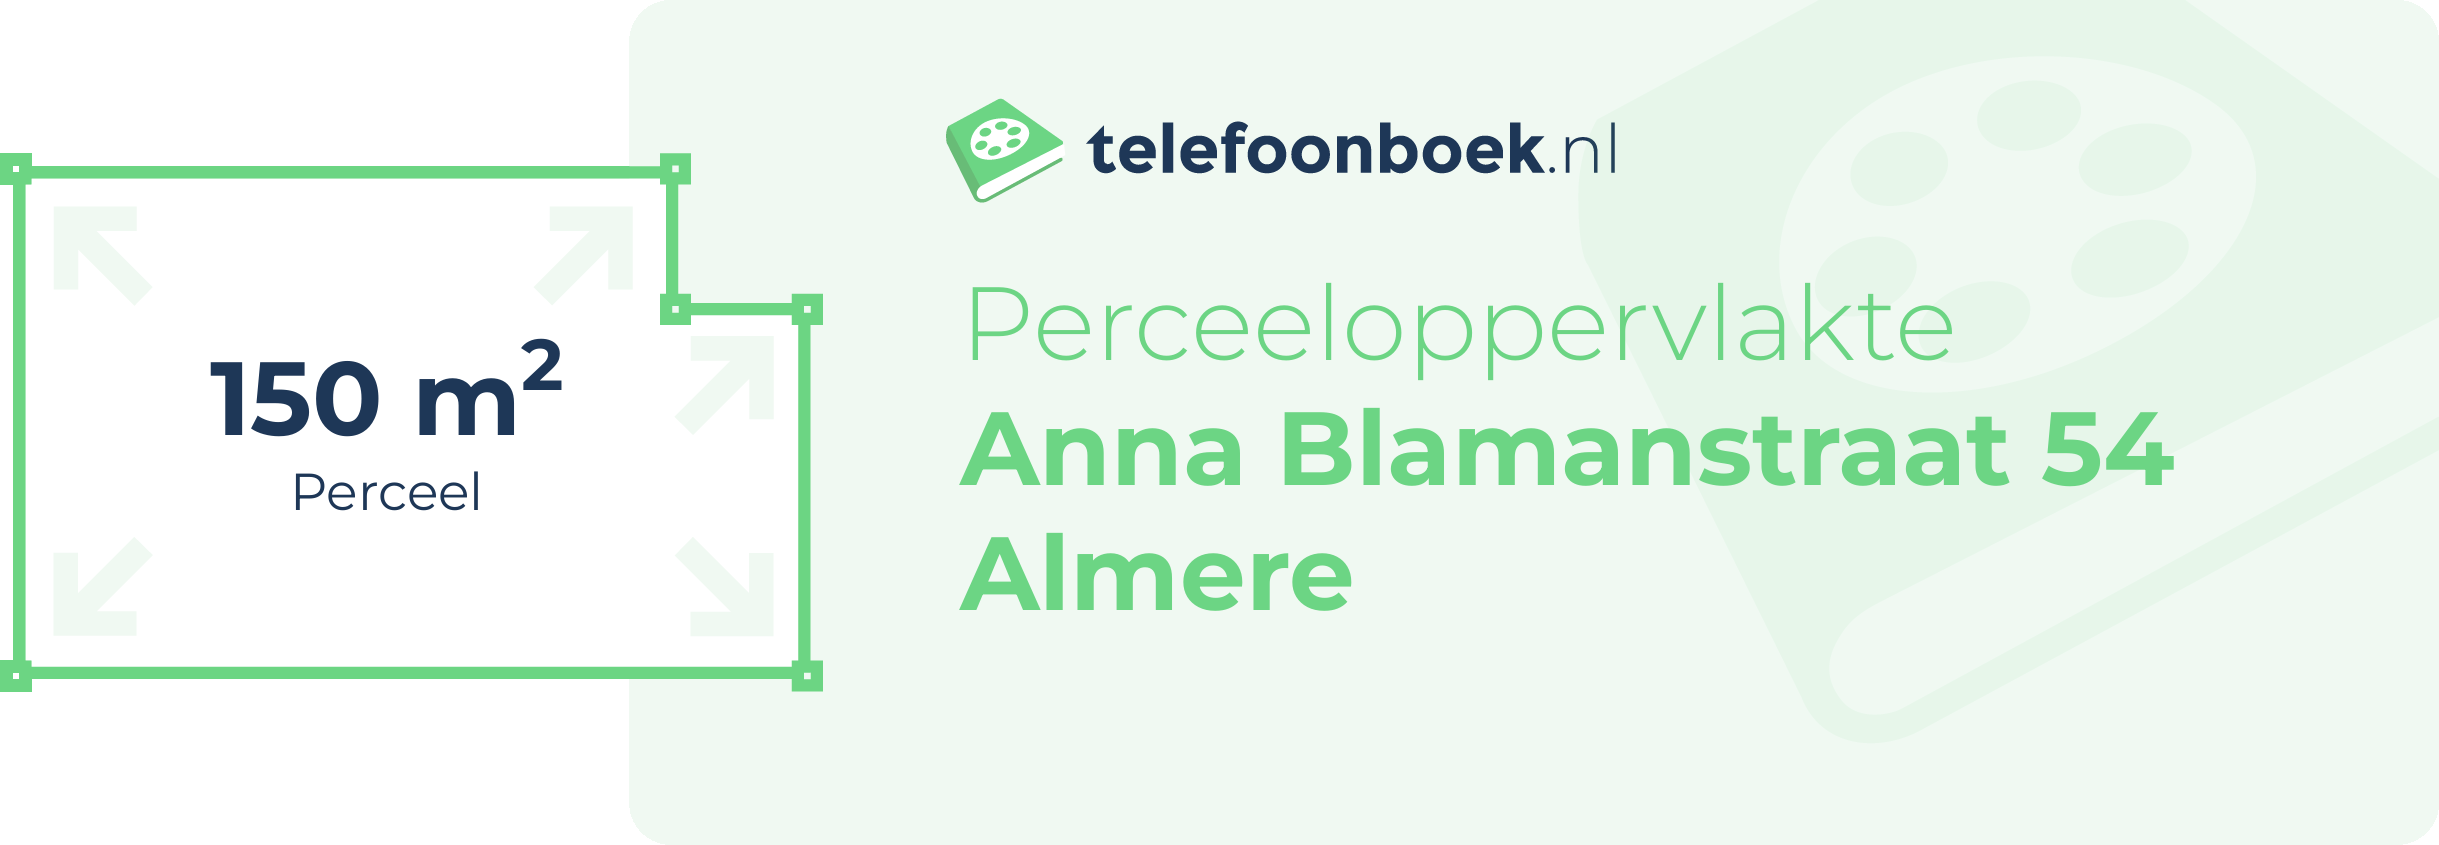 Perceeloppervlakte Anna Blamanstraat 54 Almere